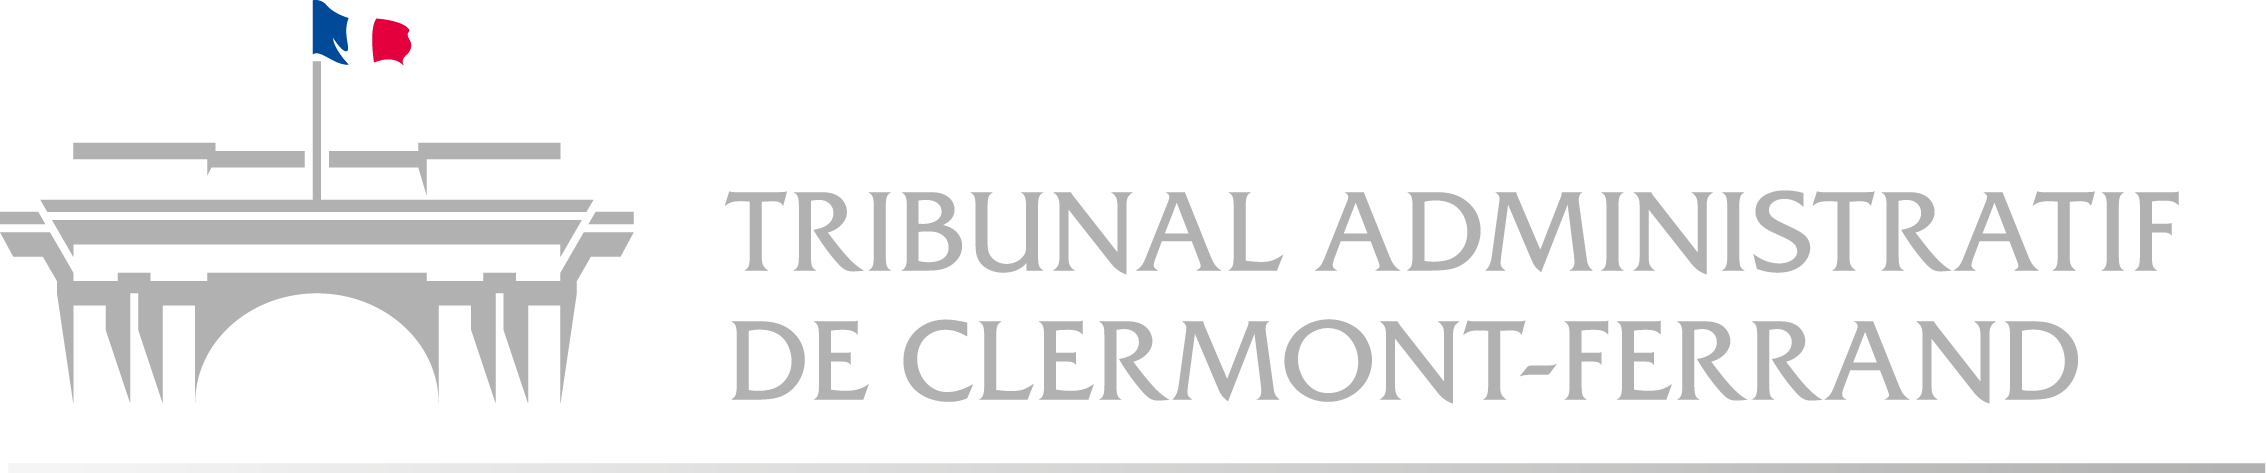 Tribunal administratif de Clermont-Ferrand - Retour à l'accueil